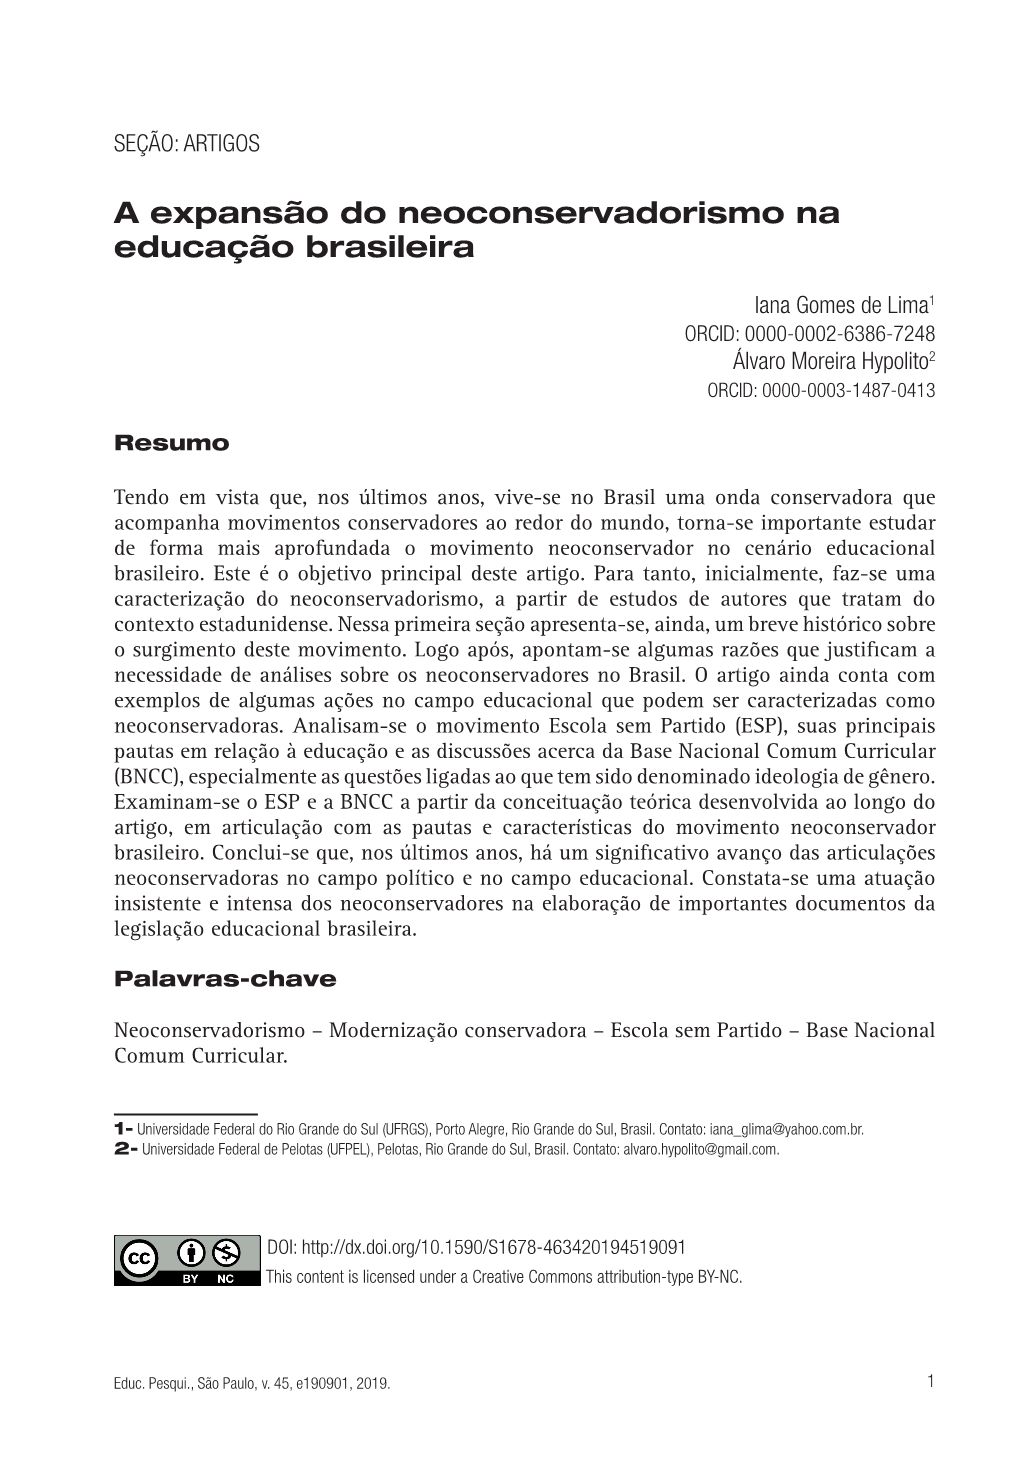 A Expansão Do Neoconservadorismo Na Educação Brasileira